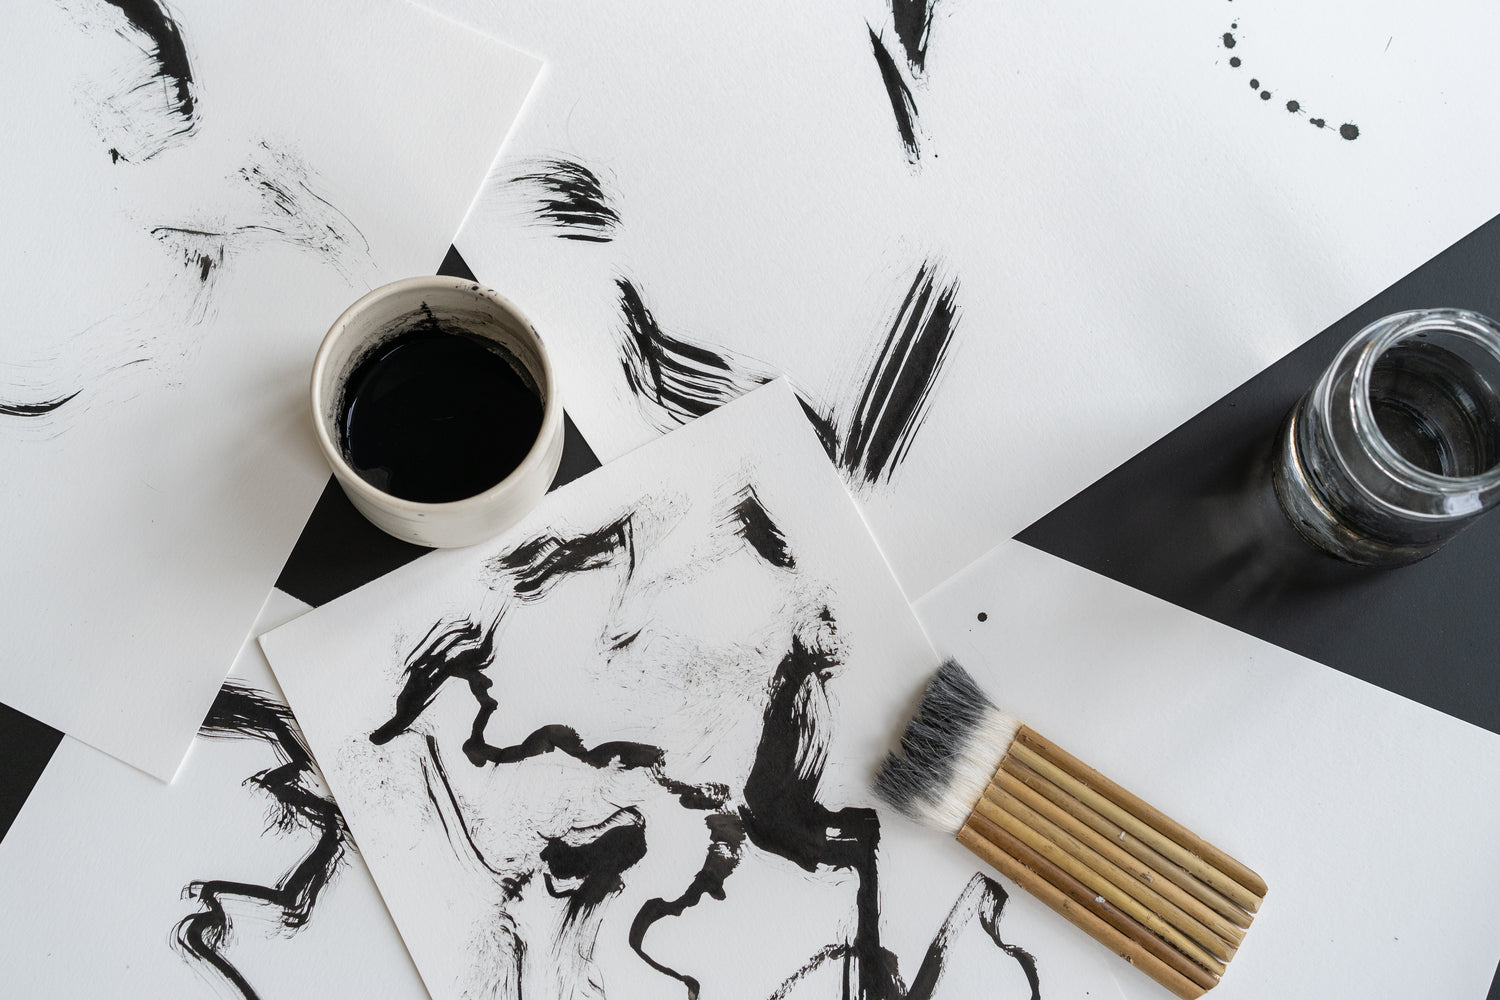 Iya Gallery minimal and abstract Ink paintings by Emilie Van Camp inspired by wabi-sabi